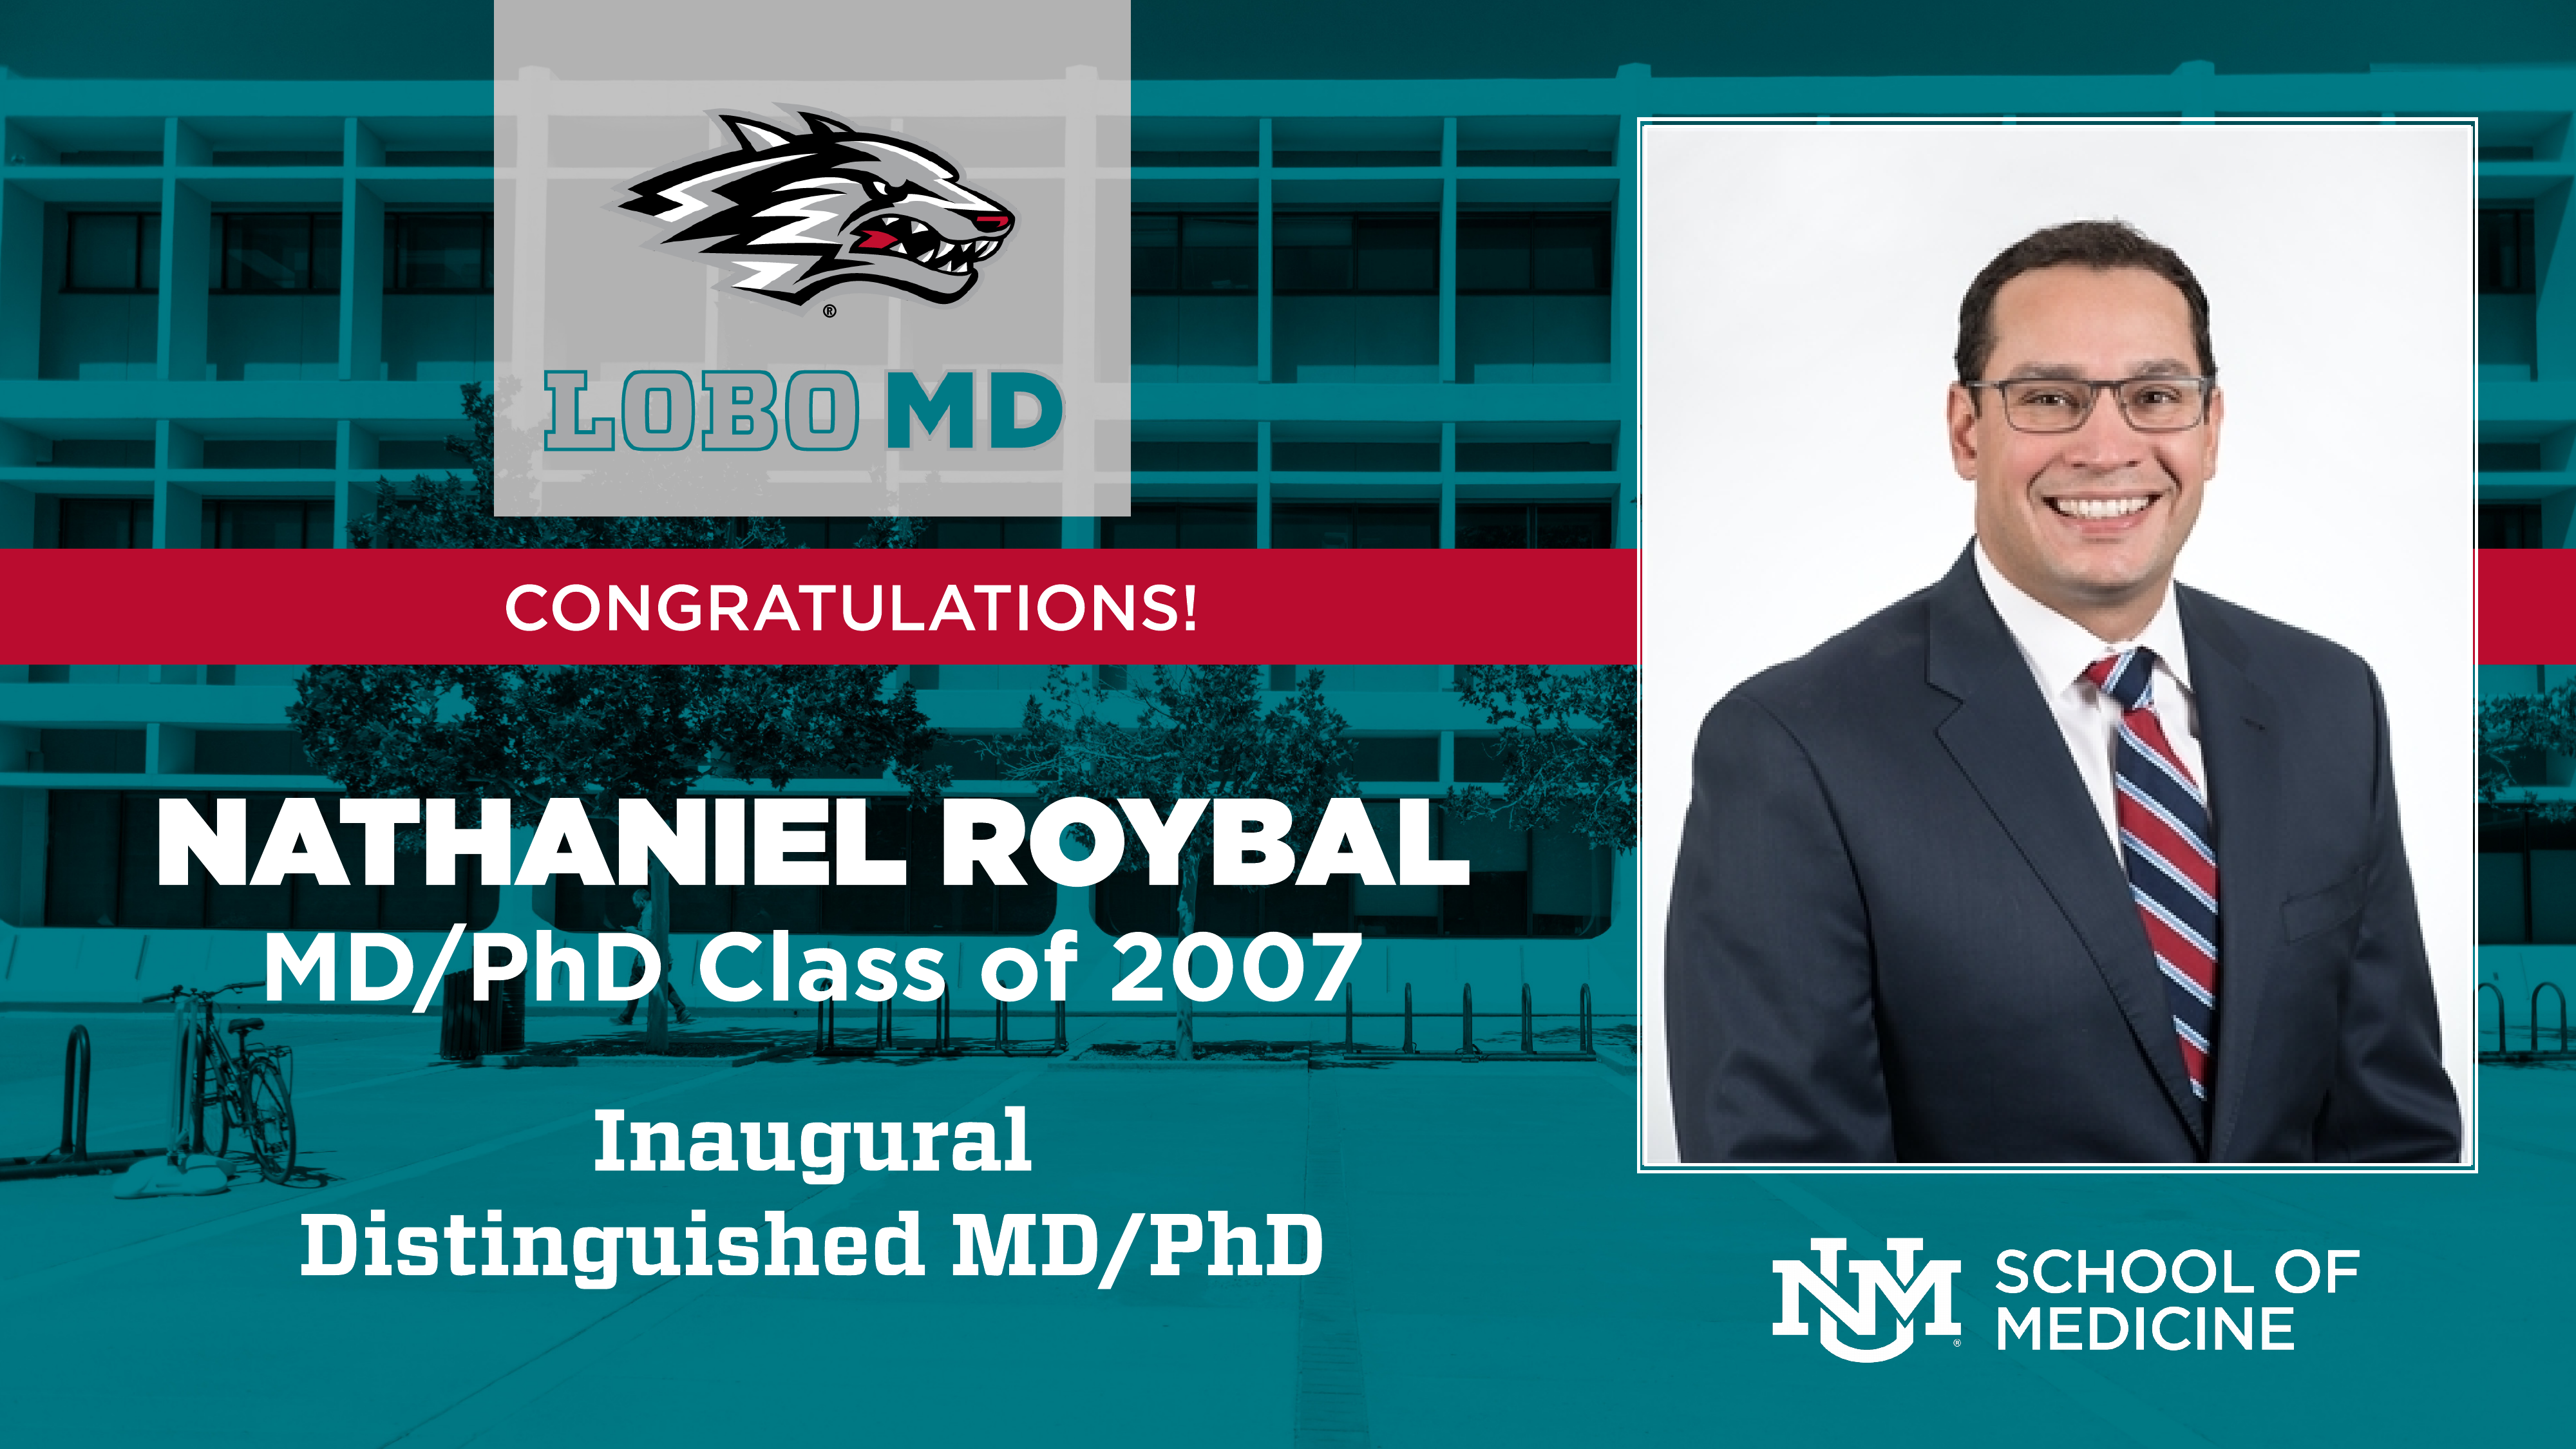 Premio inaugurale per MD/PhD del Dott. Nathaniel Roybal